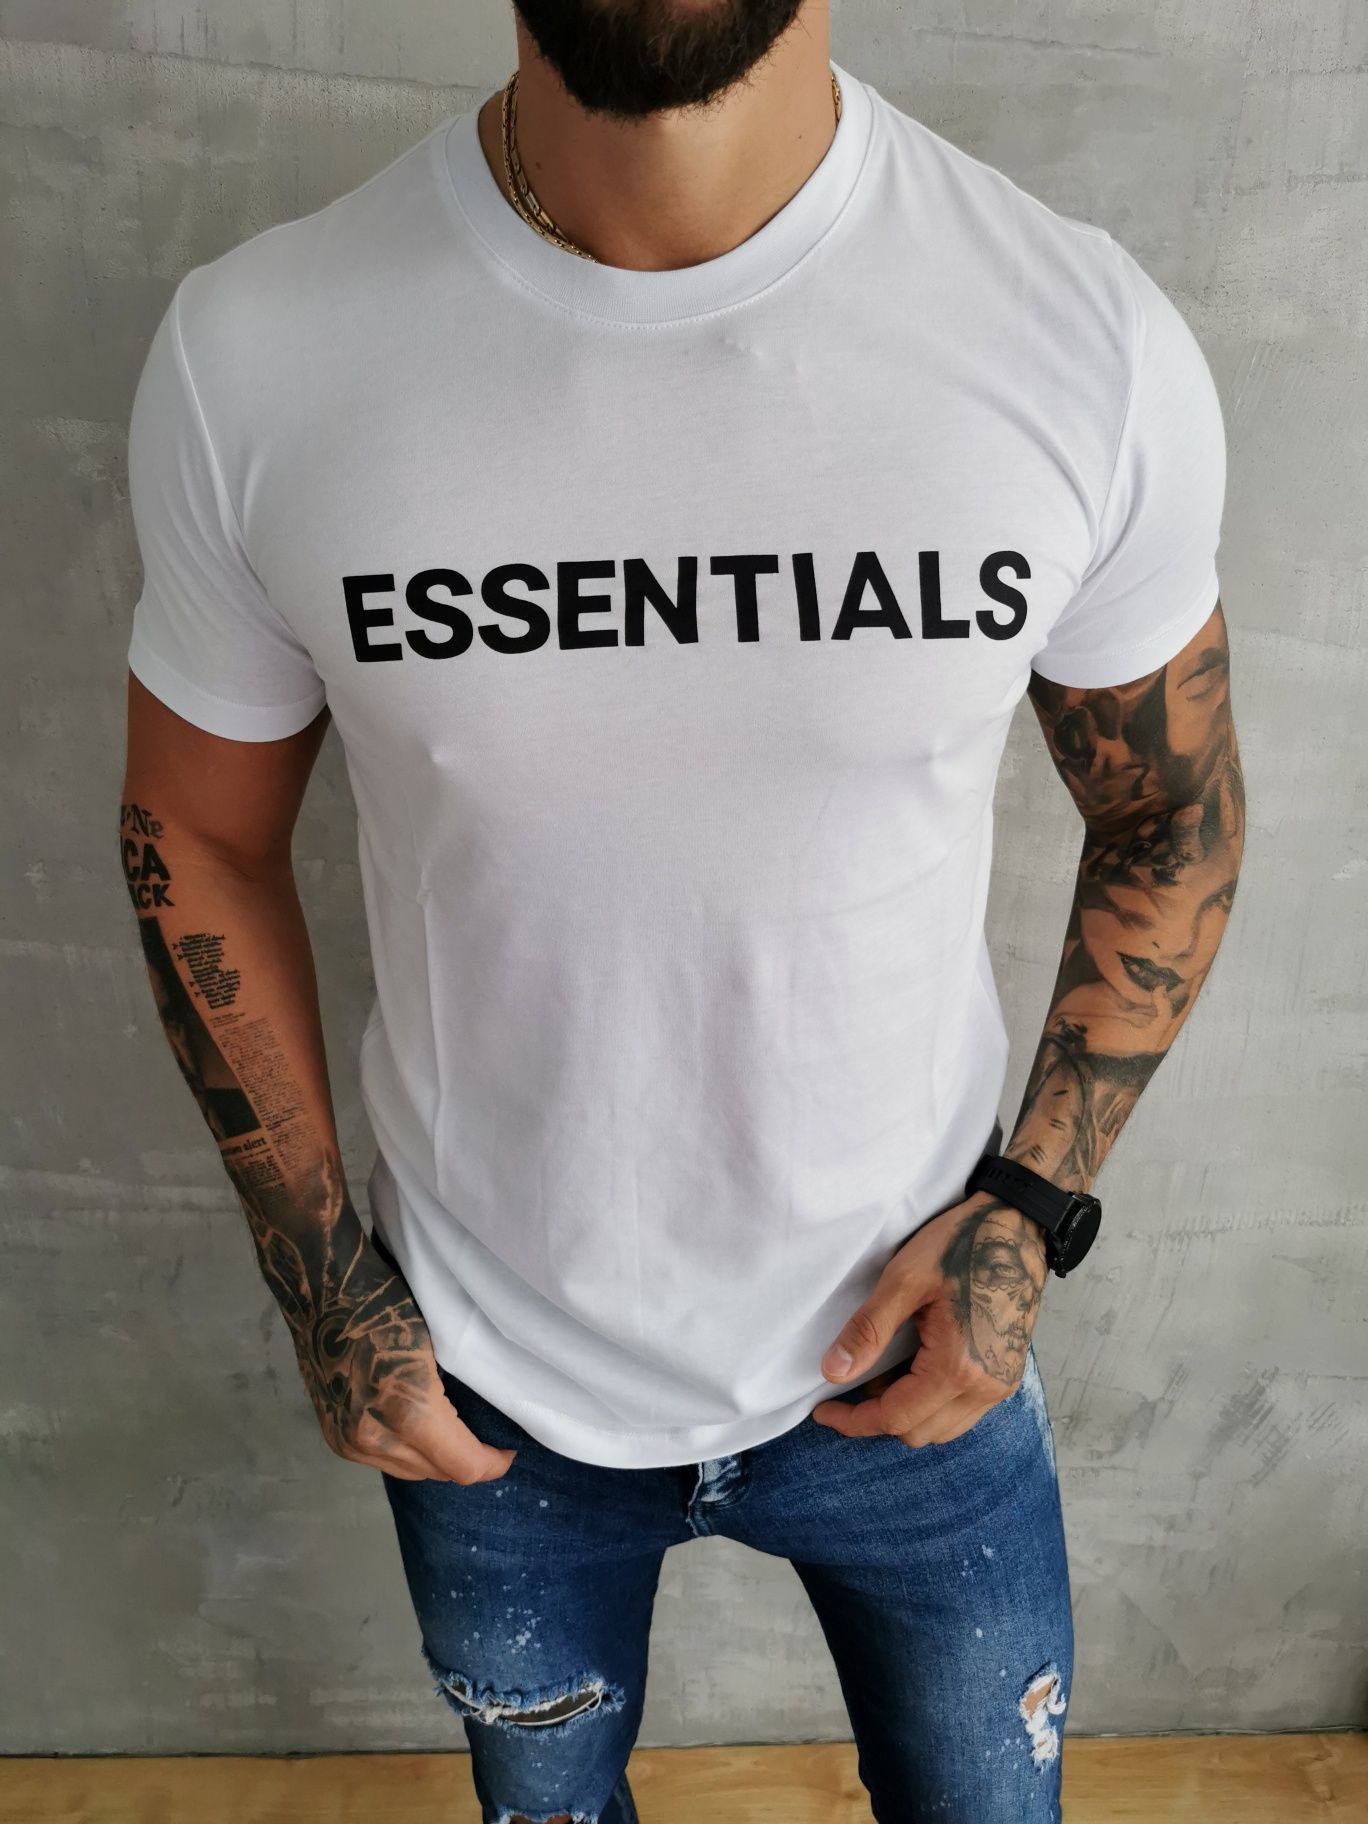 Essentials koszulka męska t-shirt M, L, 3XL